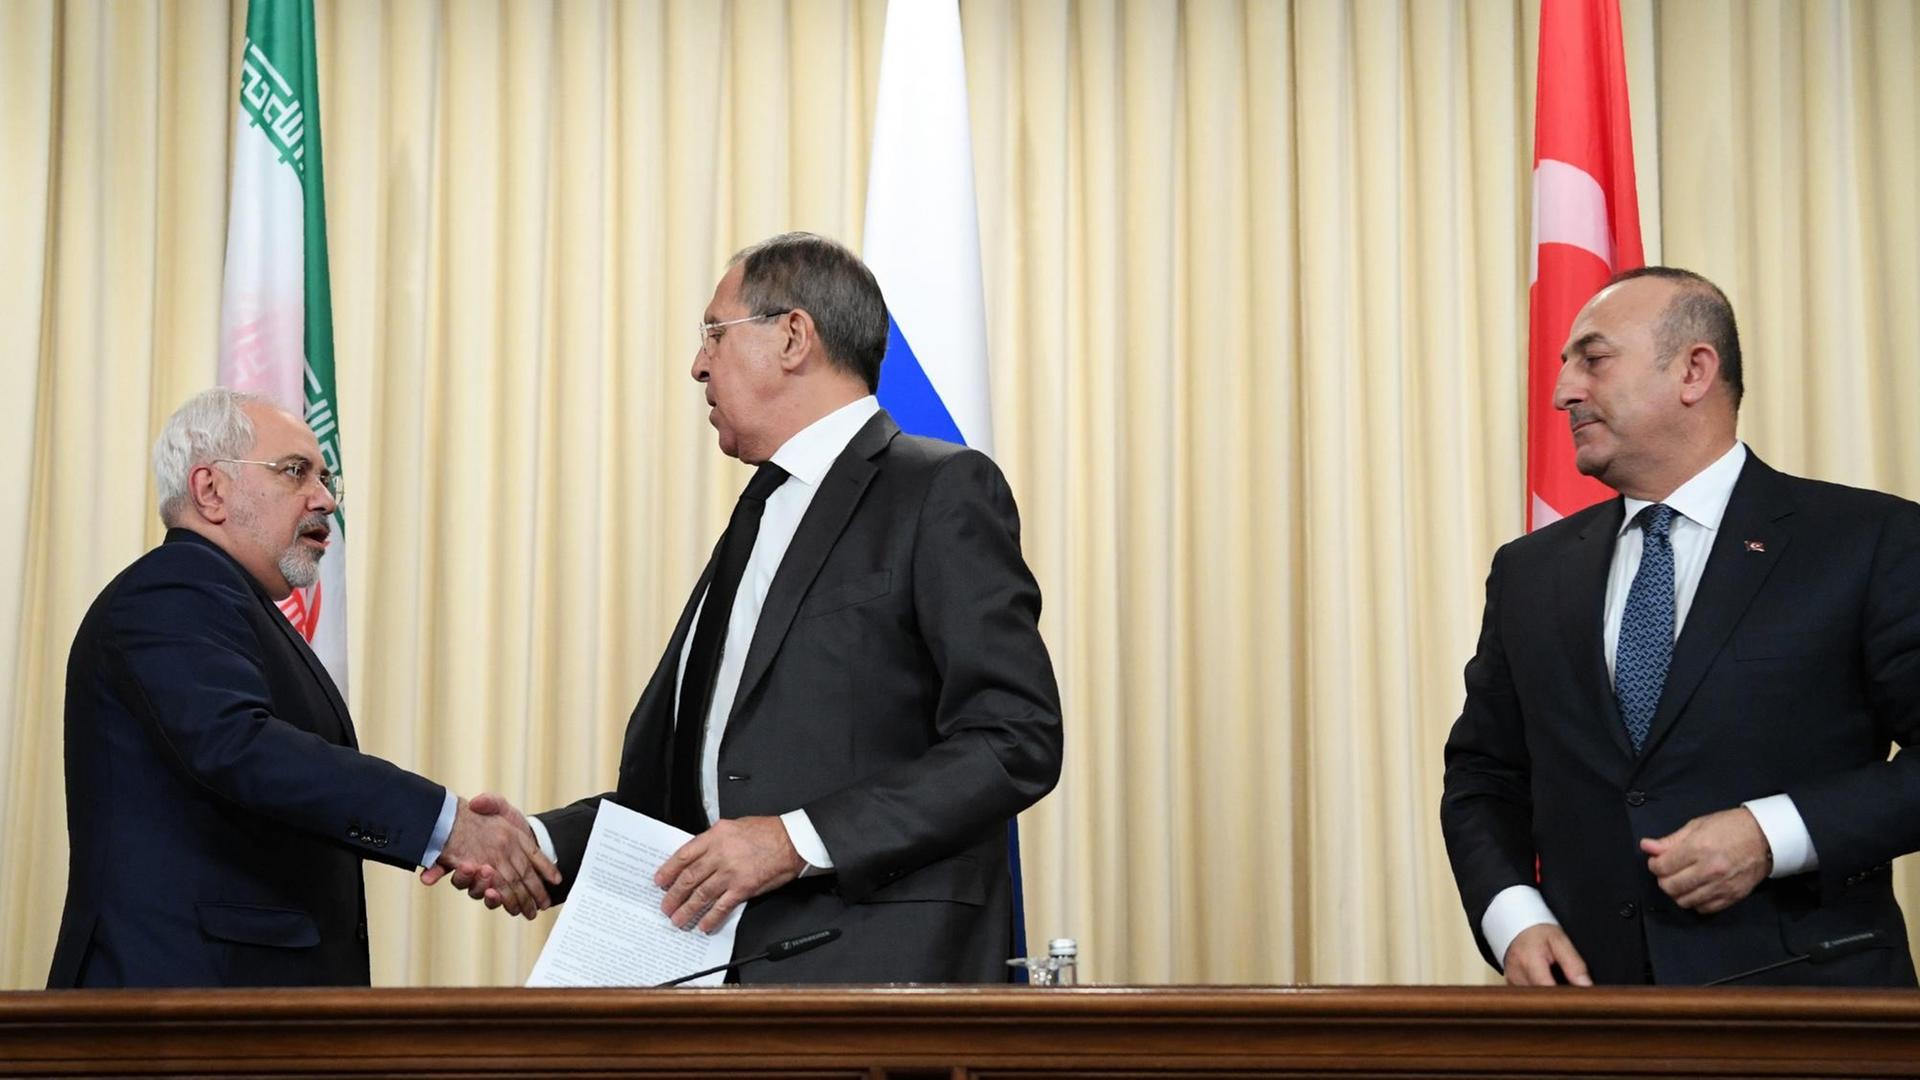 Sergej Lawrow schüttelt Mohammad Javad Zarif die Hand, rechts von den beiden Mevlut Cavusoglu